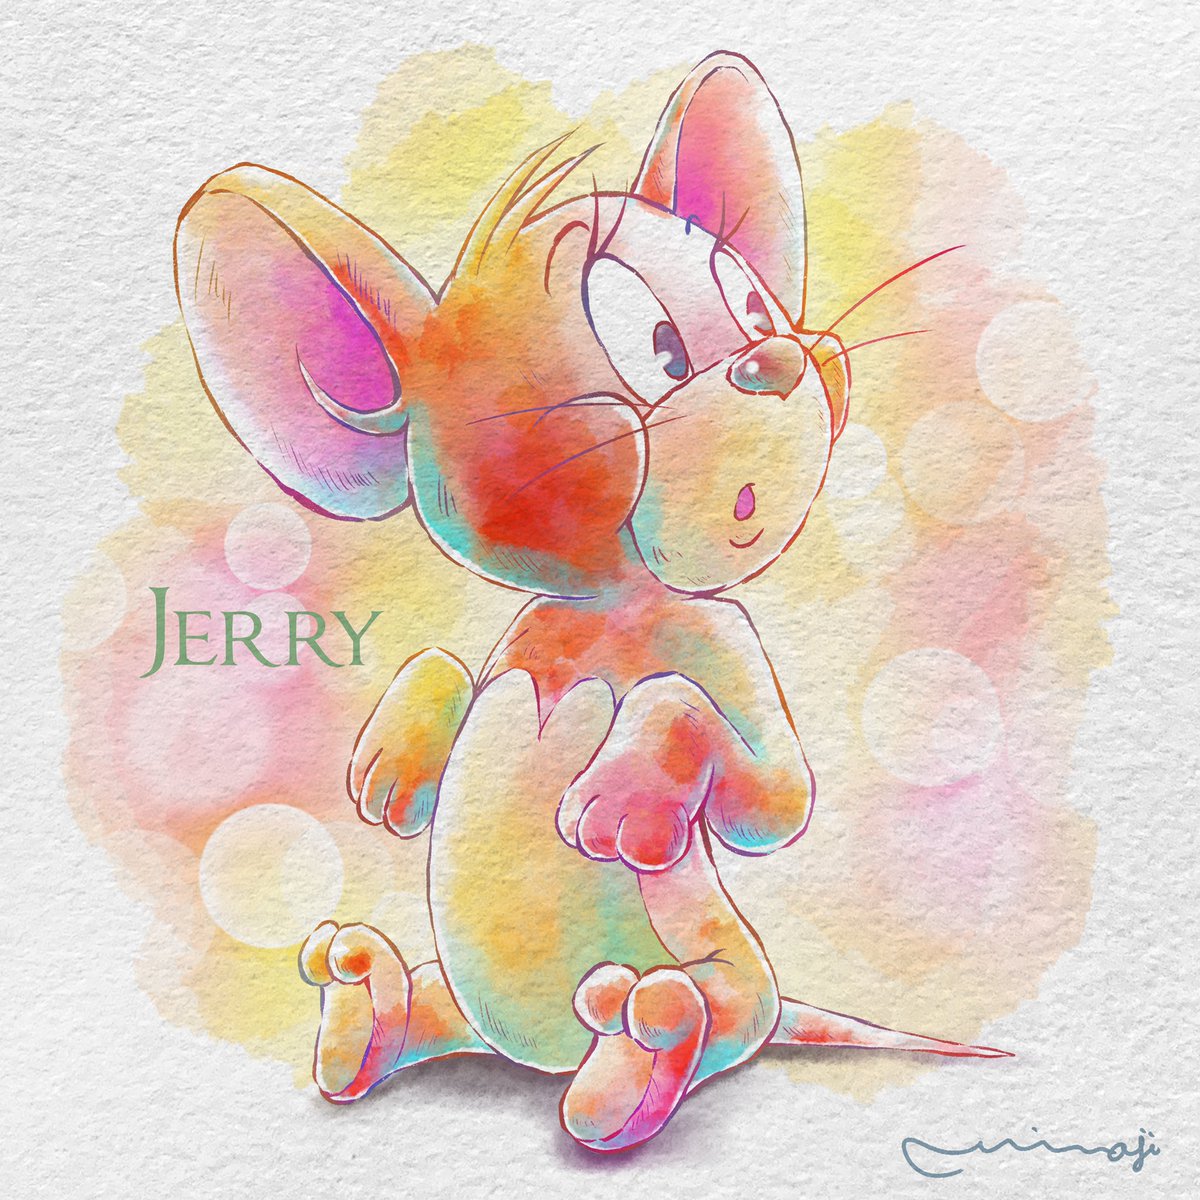 Miwajiアレンジでジェリーを描きました まつ毛がとっても可愛いジェリーに Miwaji もうちょい多忙 のイラスト